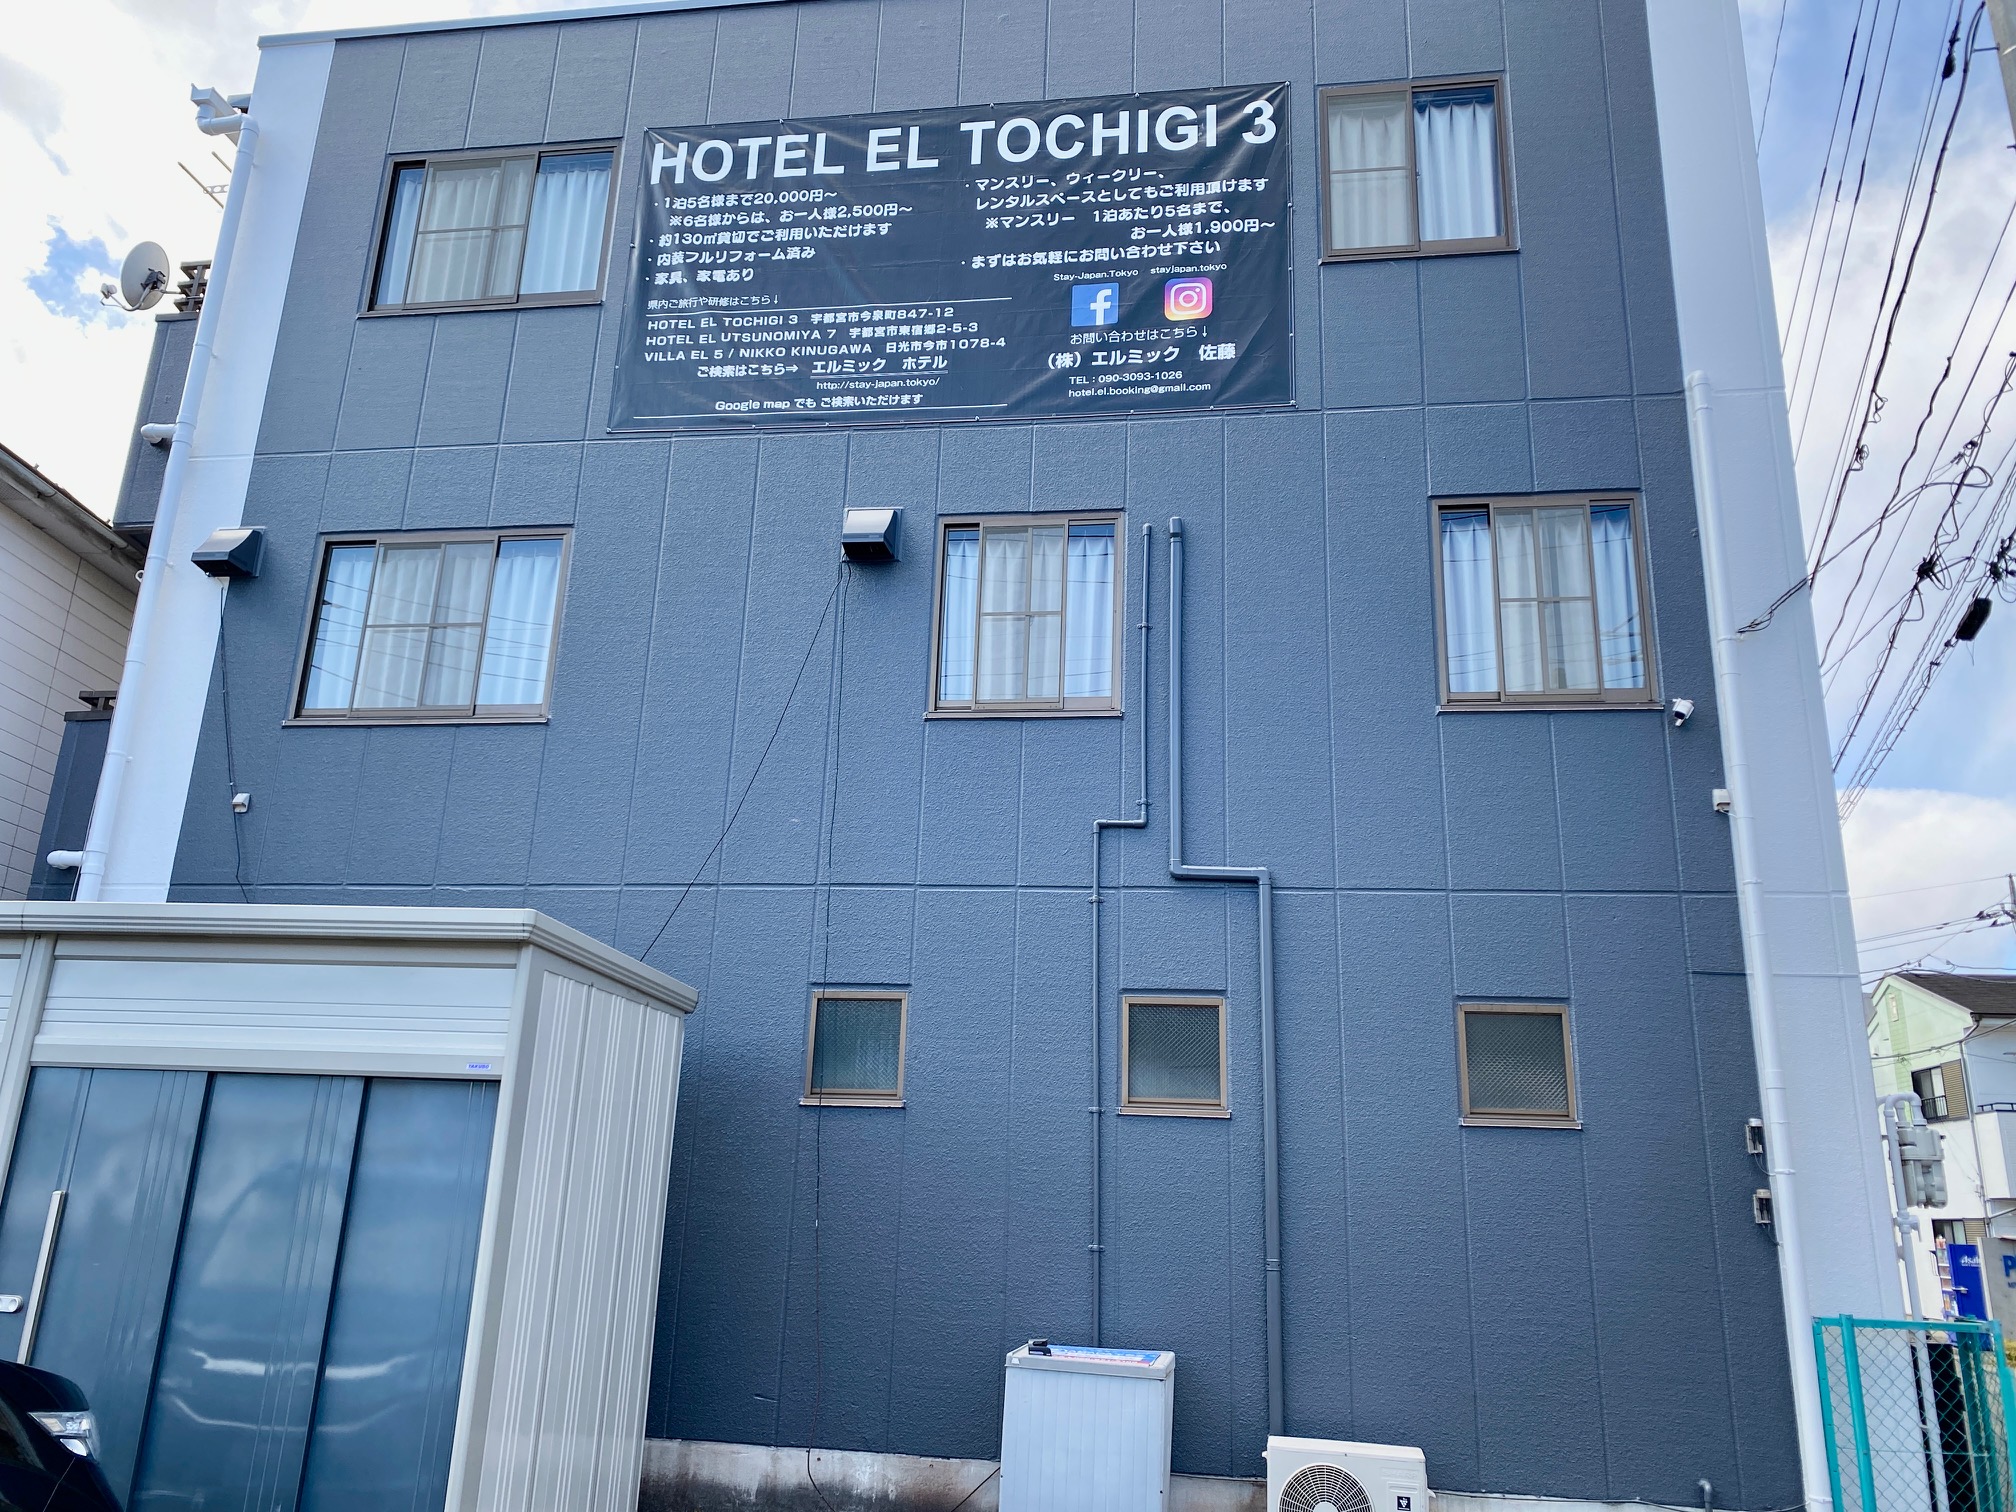 HOTEL EL TOCHIGI 3 image